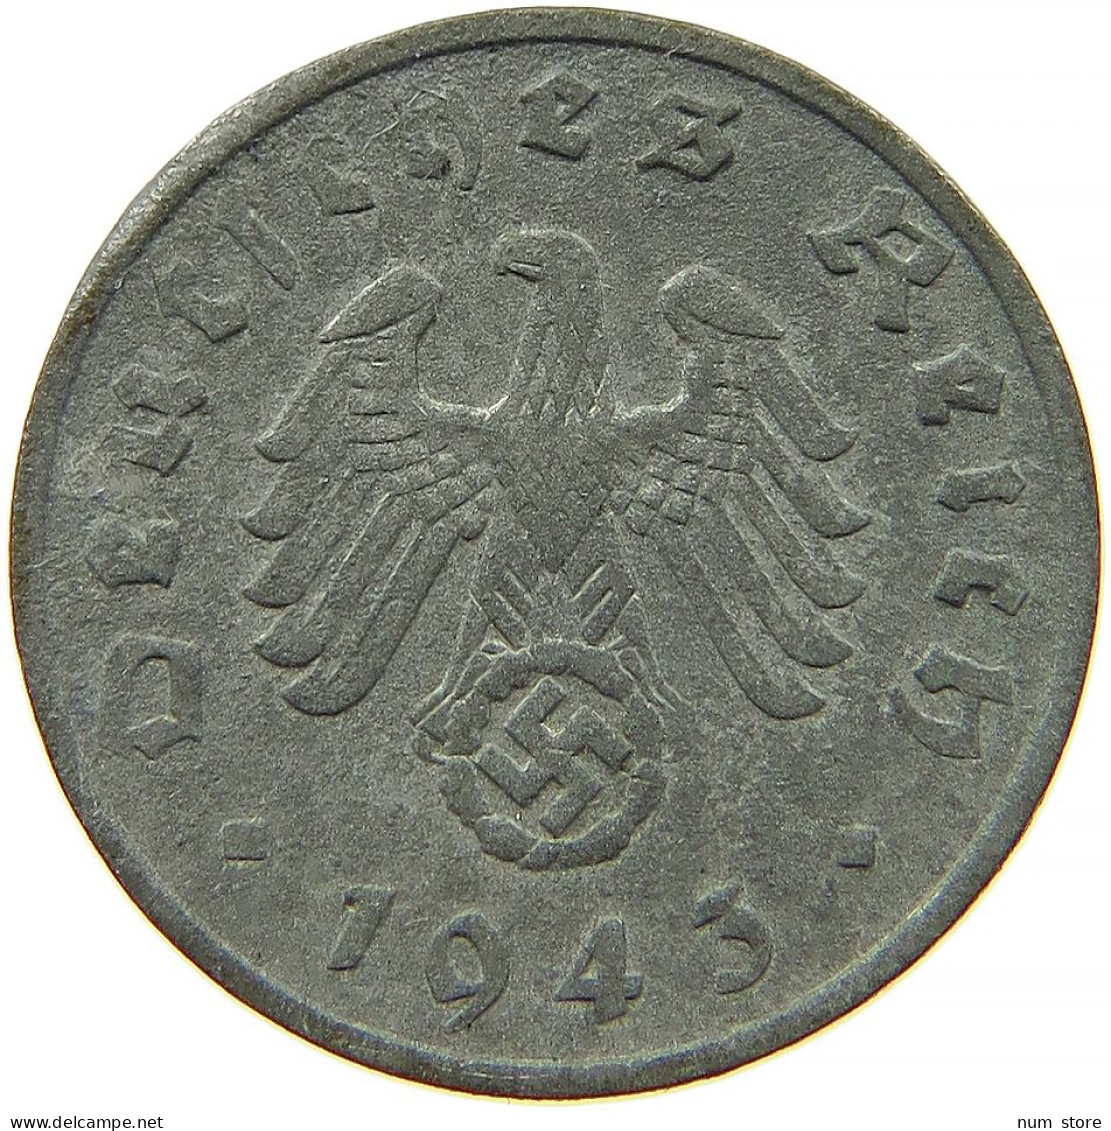 GERMANY 1 REICHSPFENNIG 1943 F #s091 1161 - 1 Reichspfennig